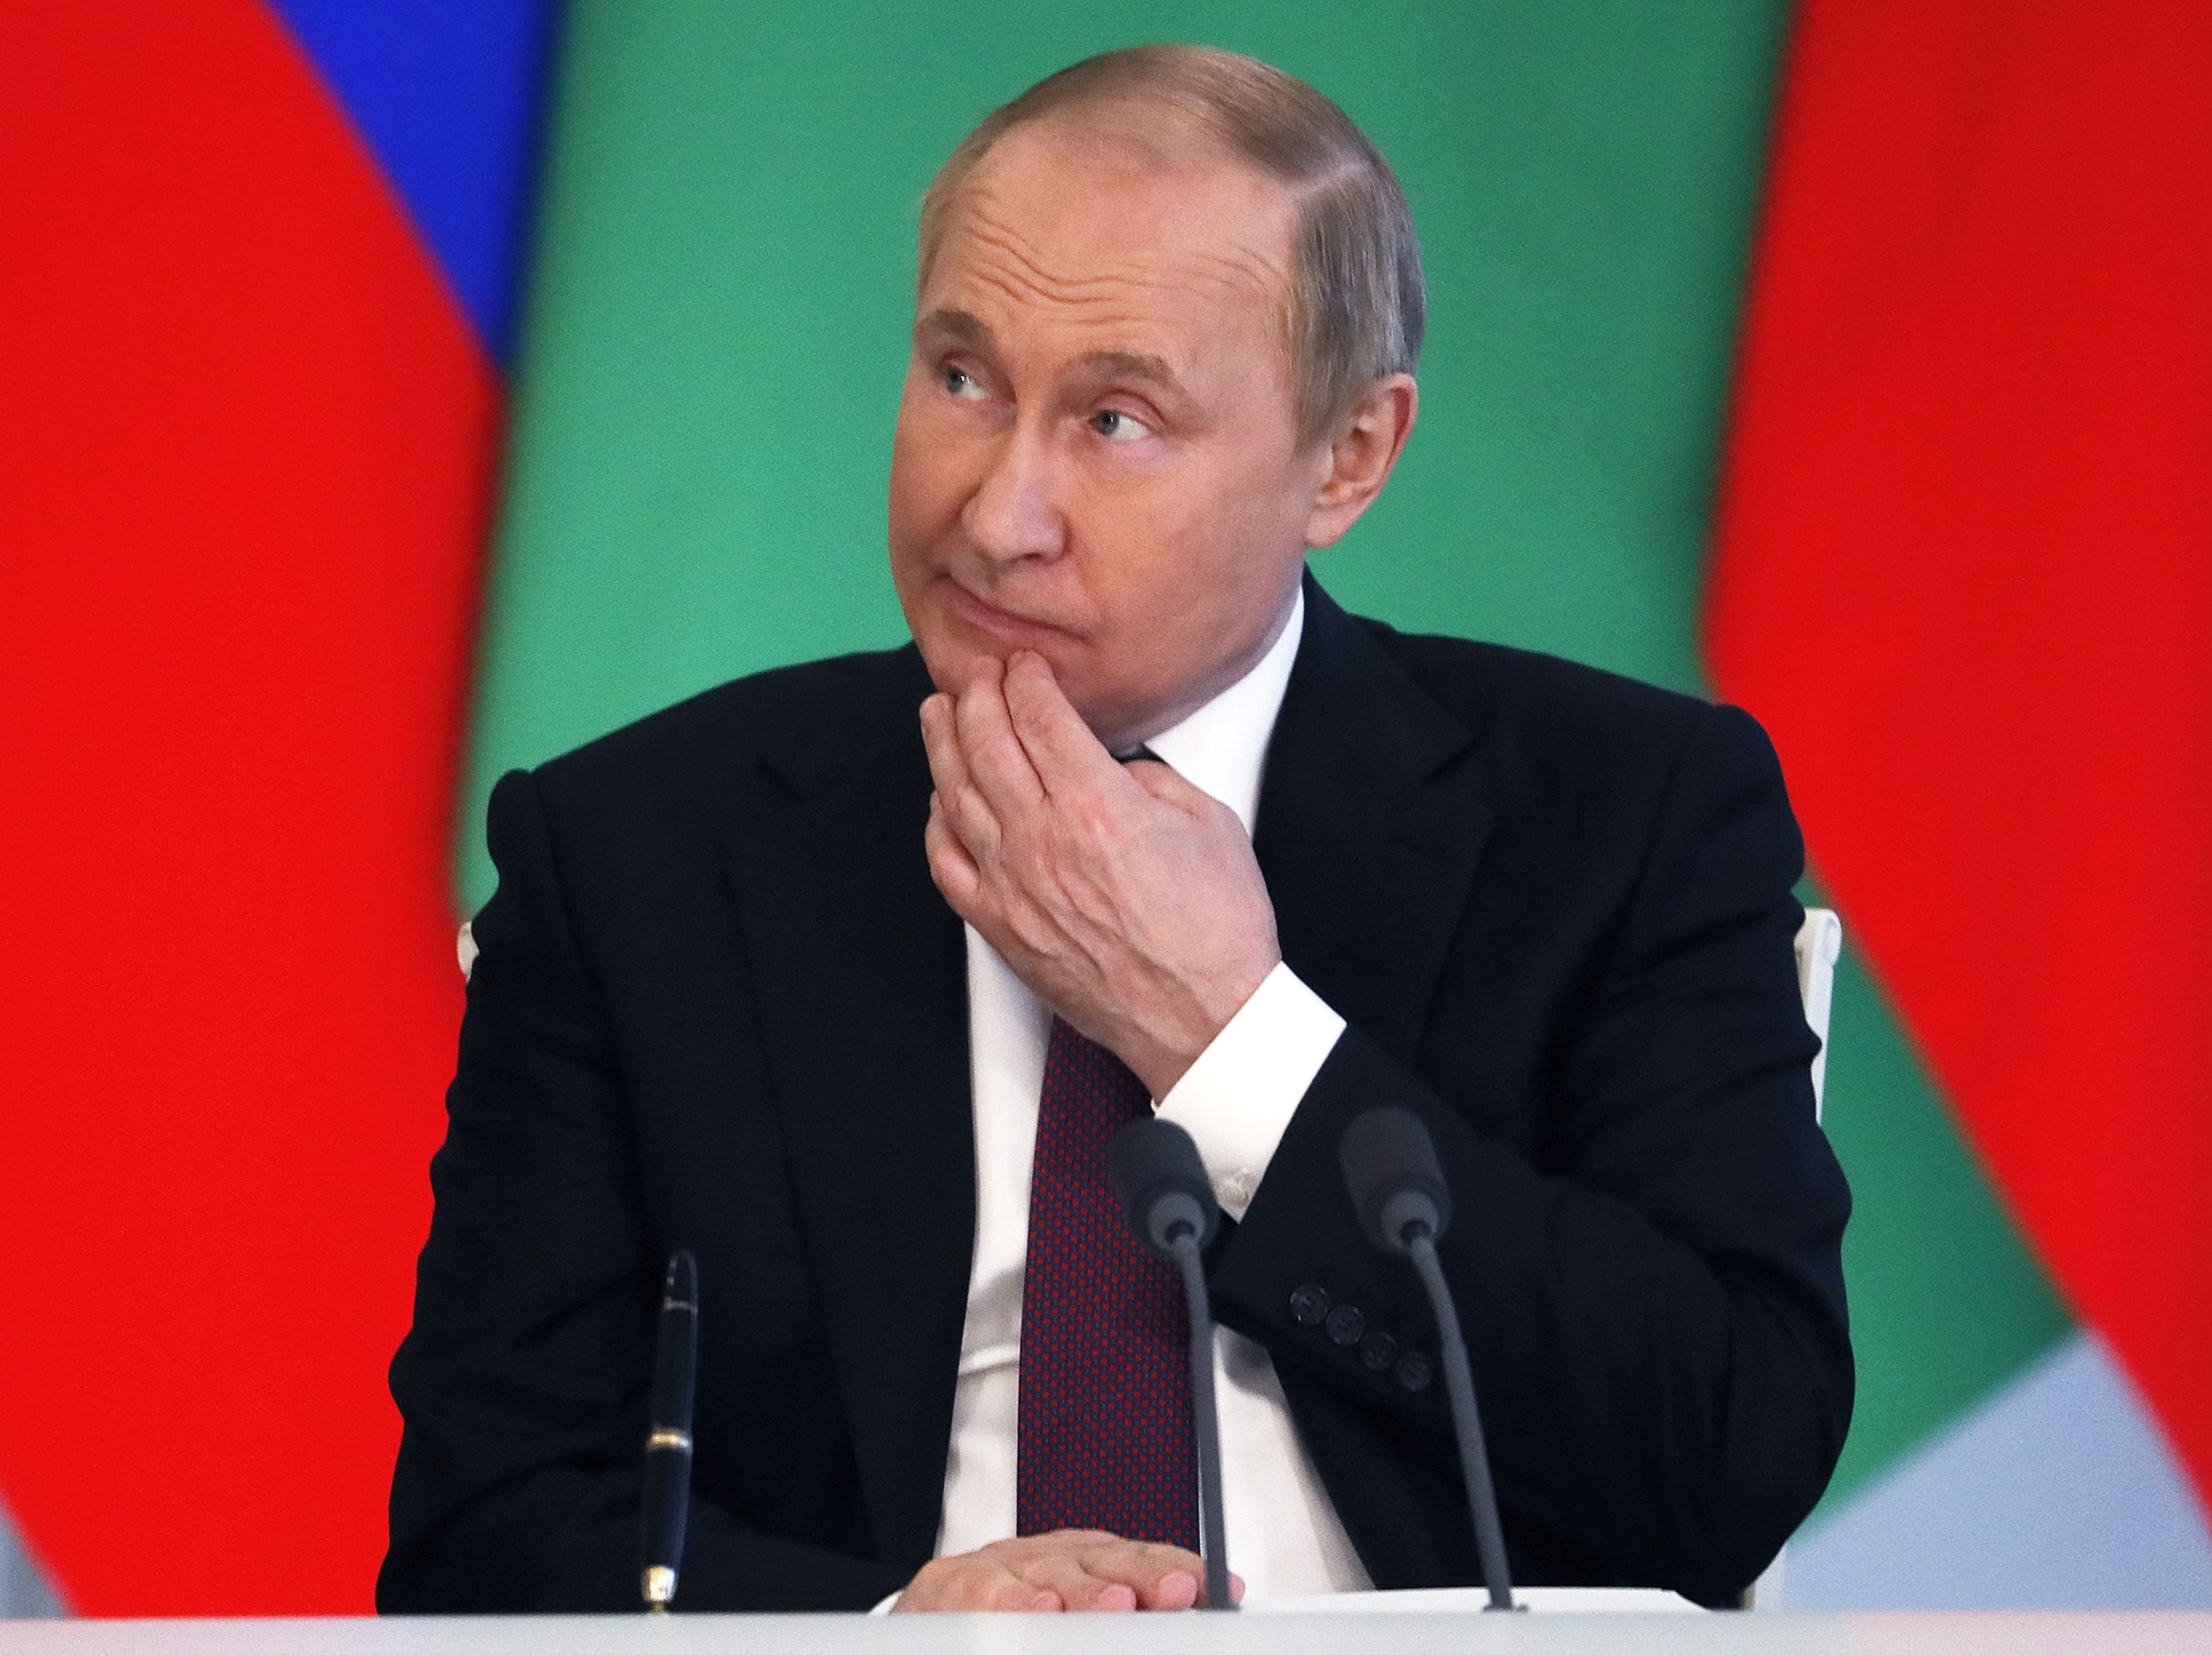 Los guardaespaldas de Vladimir Putin recogen en bolsas sus heces cuando está en el extranjero para poder traerlas de vuelta a Rusia, según un reporte